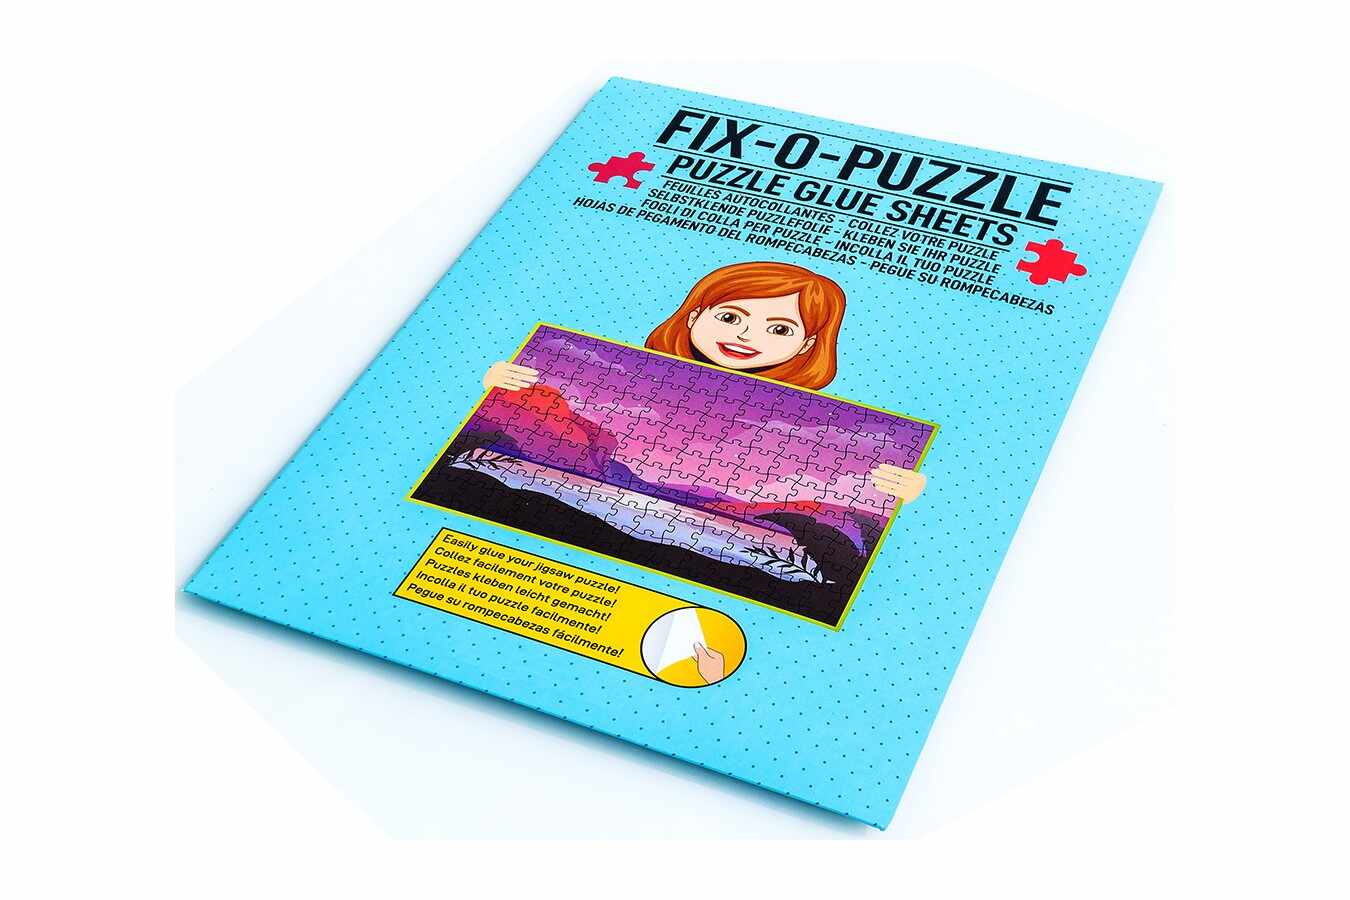 Folii pentru toate puzzle-urile de minim 500 piese comandate